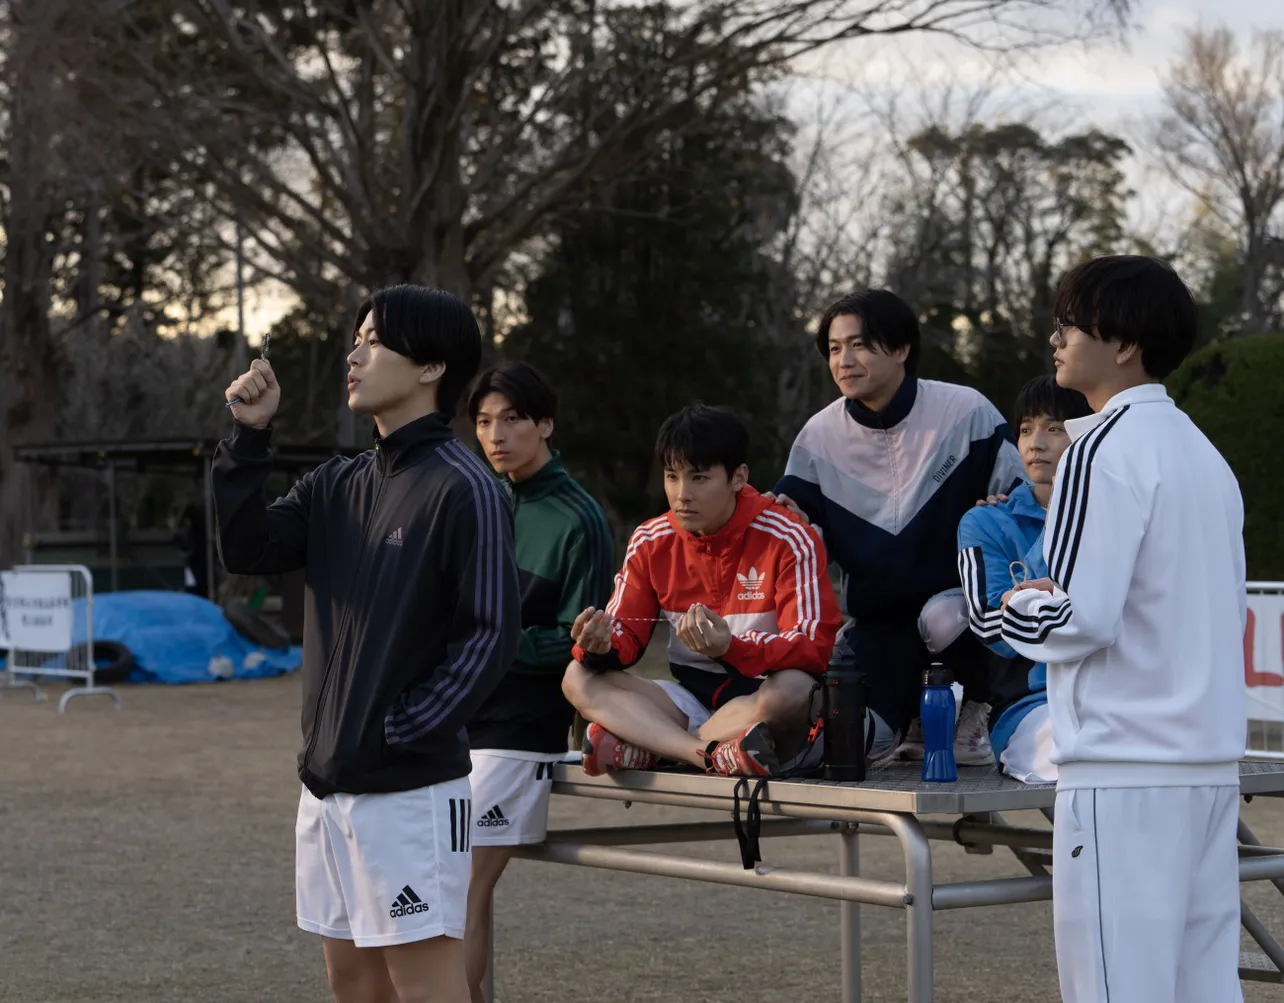  高校の陸上部仲間だった6人は、「逃走中～MISSION IN TOKYO」で再会する。